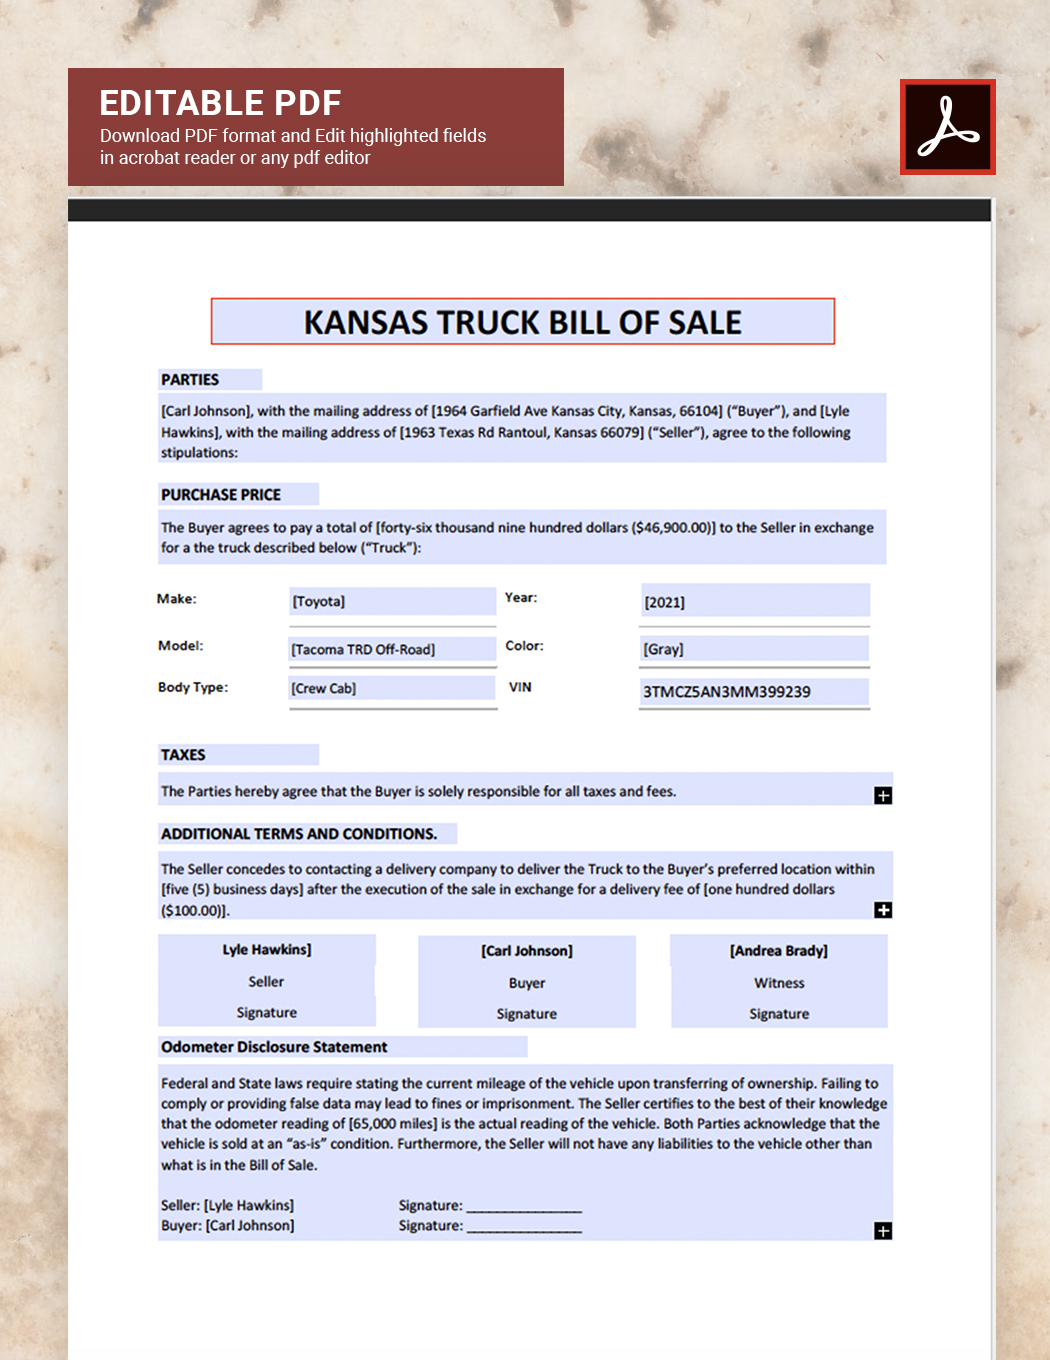 Kansas Truck Bill of Sale Template